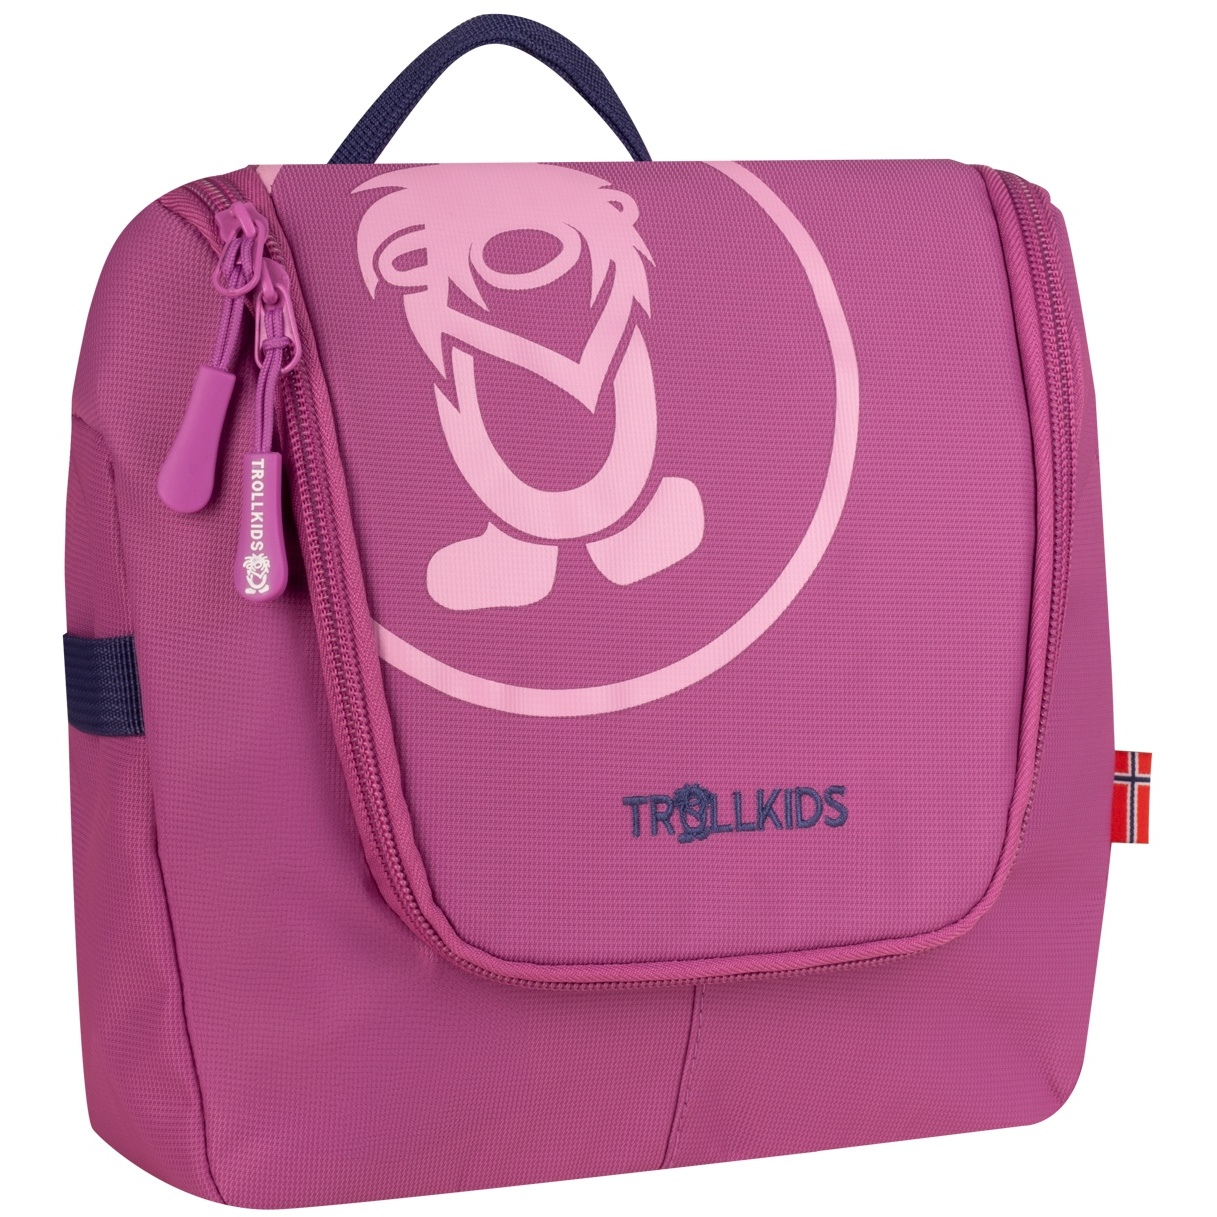 Produktbild von Trollkids Waschtasche 5L Kinder - violet blue/mallow pink/wild rose